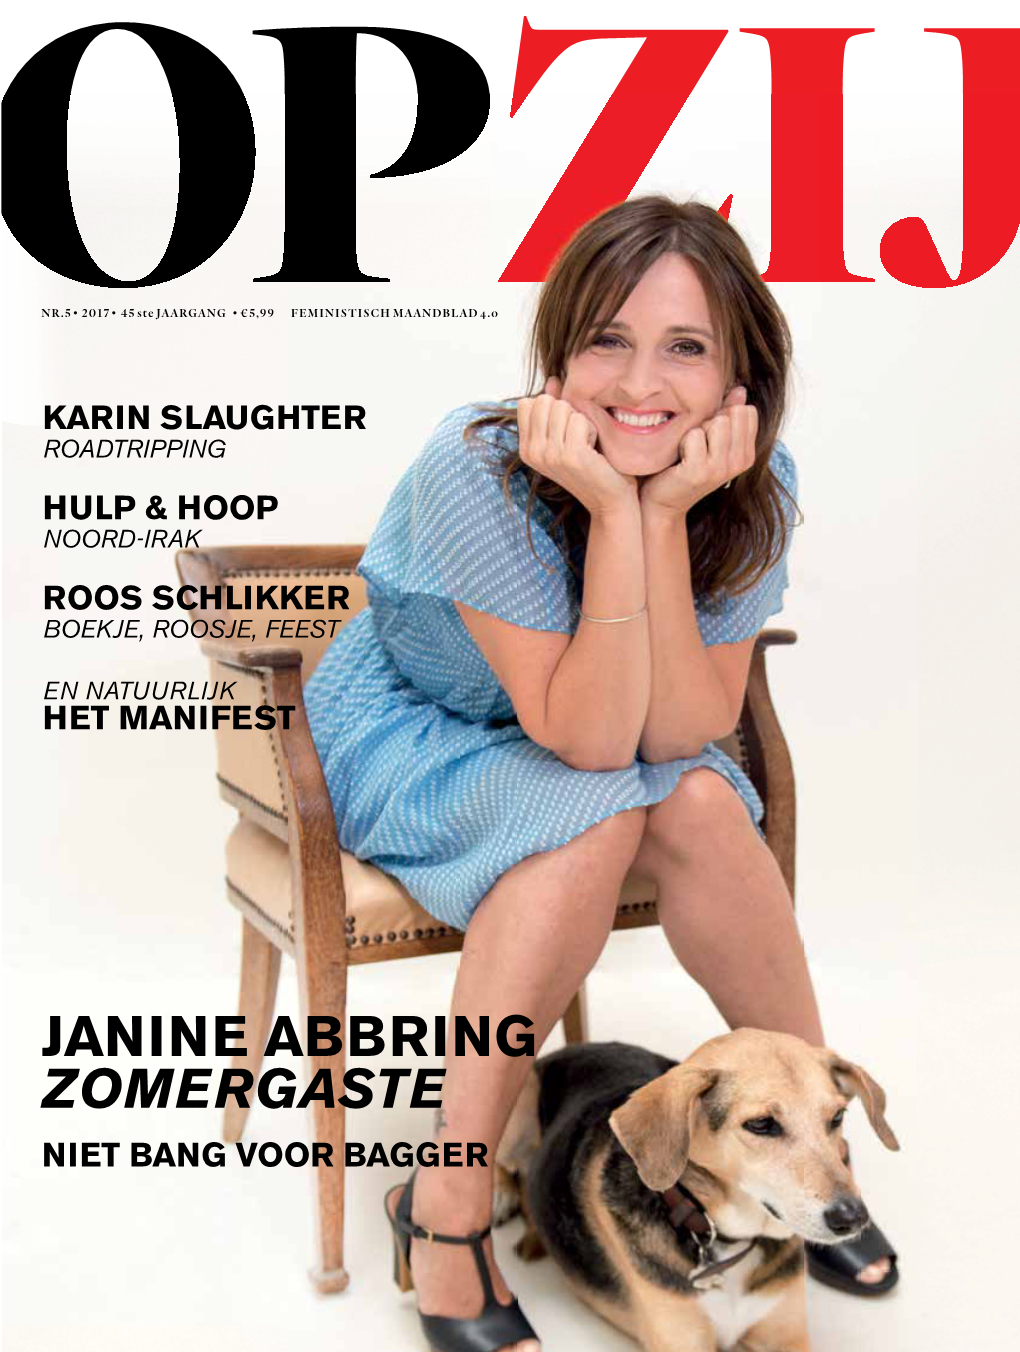 Janine Abbring Zomergaste Niet Bang Voor Bagger